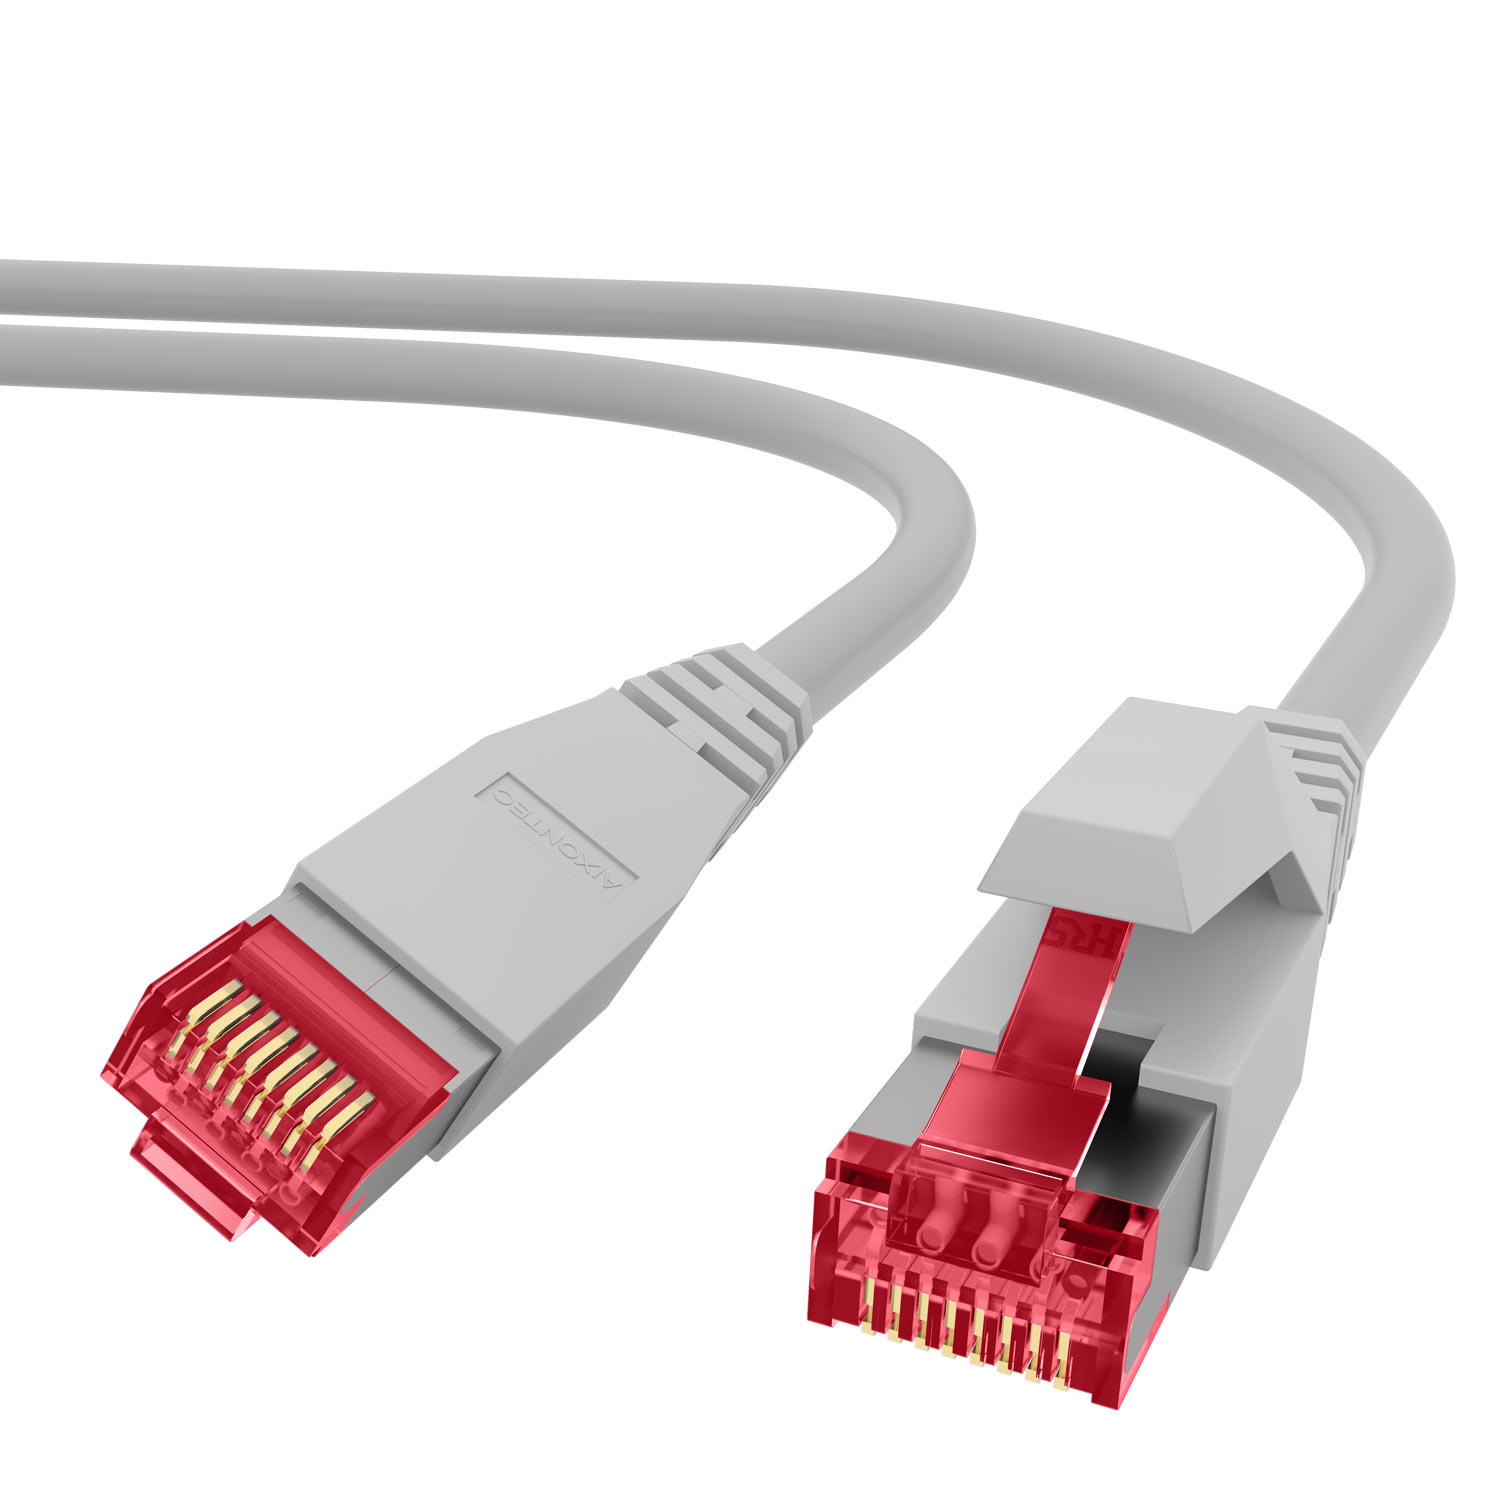 AIXONTEC 10m RJ45 10 Gigabit, Lankabel Ethernetkabel Netzwerkkabel, 10,0 m Patchkabel